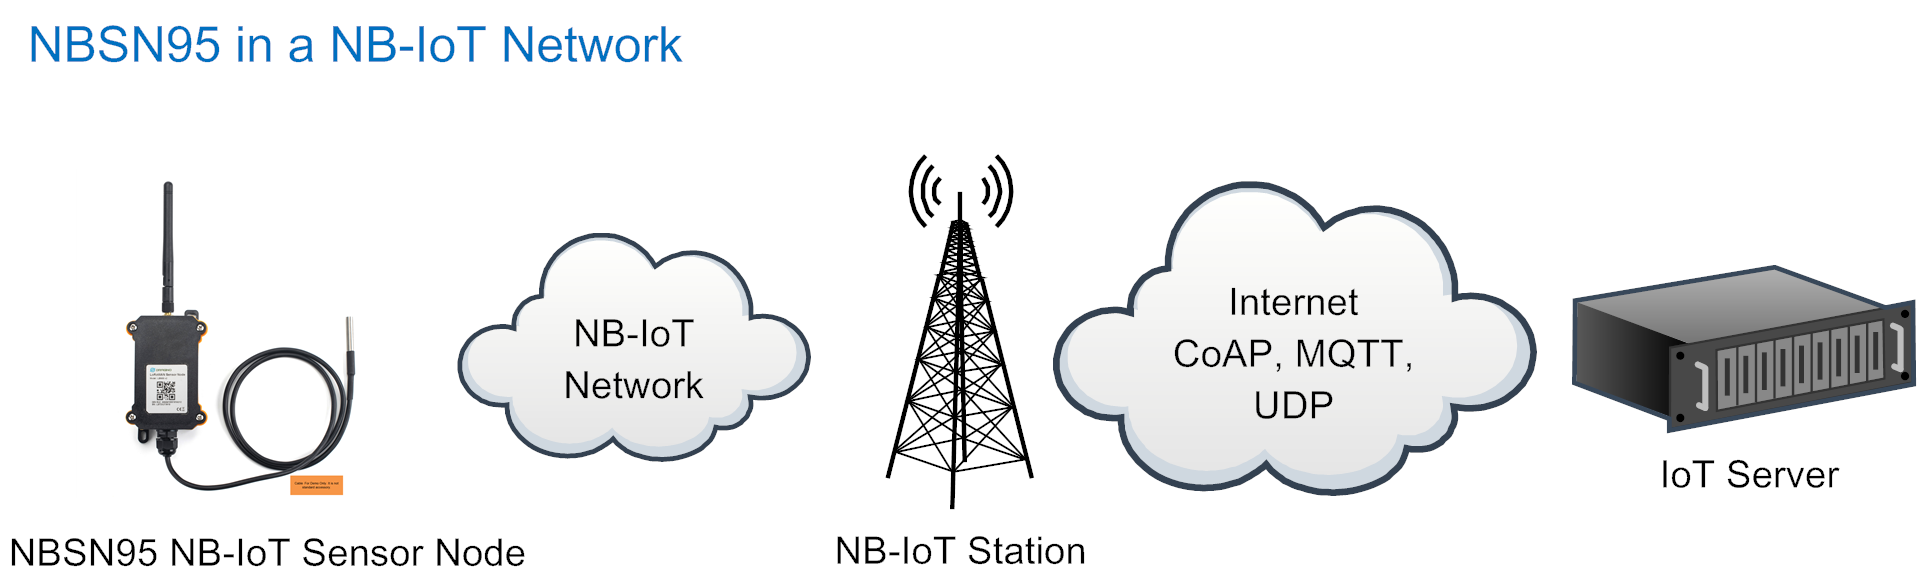 NB-IoT Sensor Node